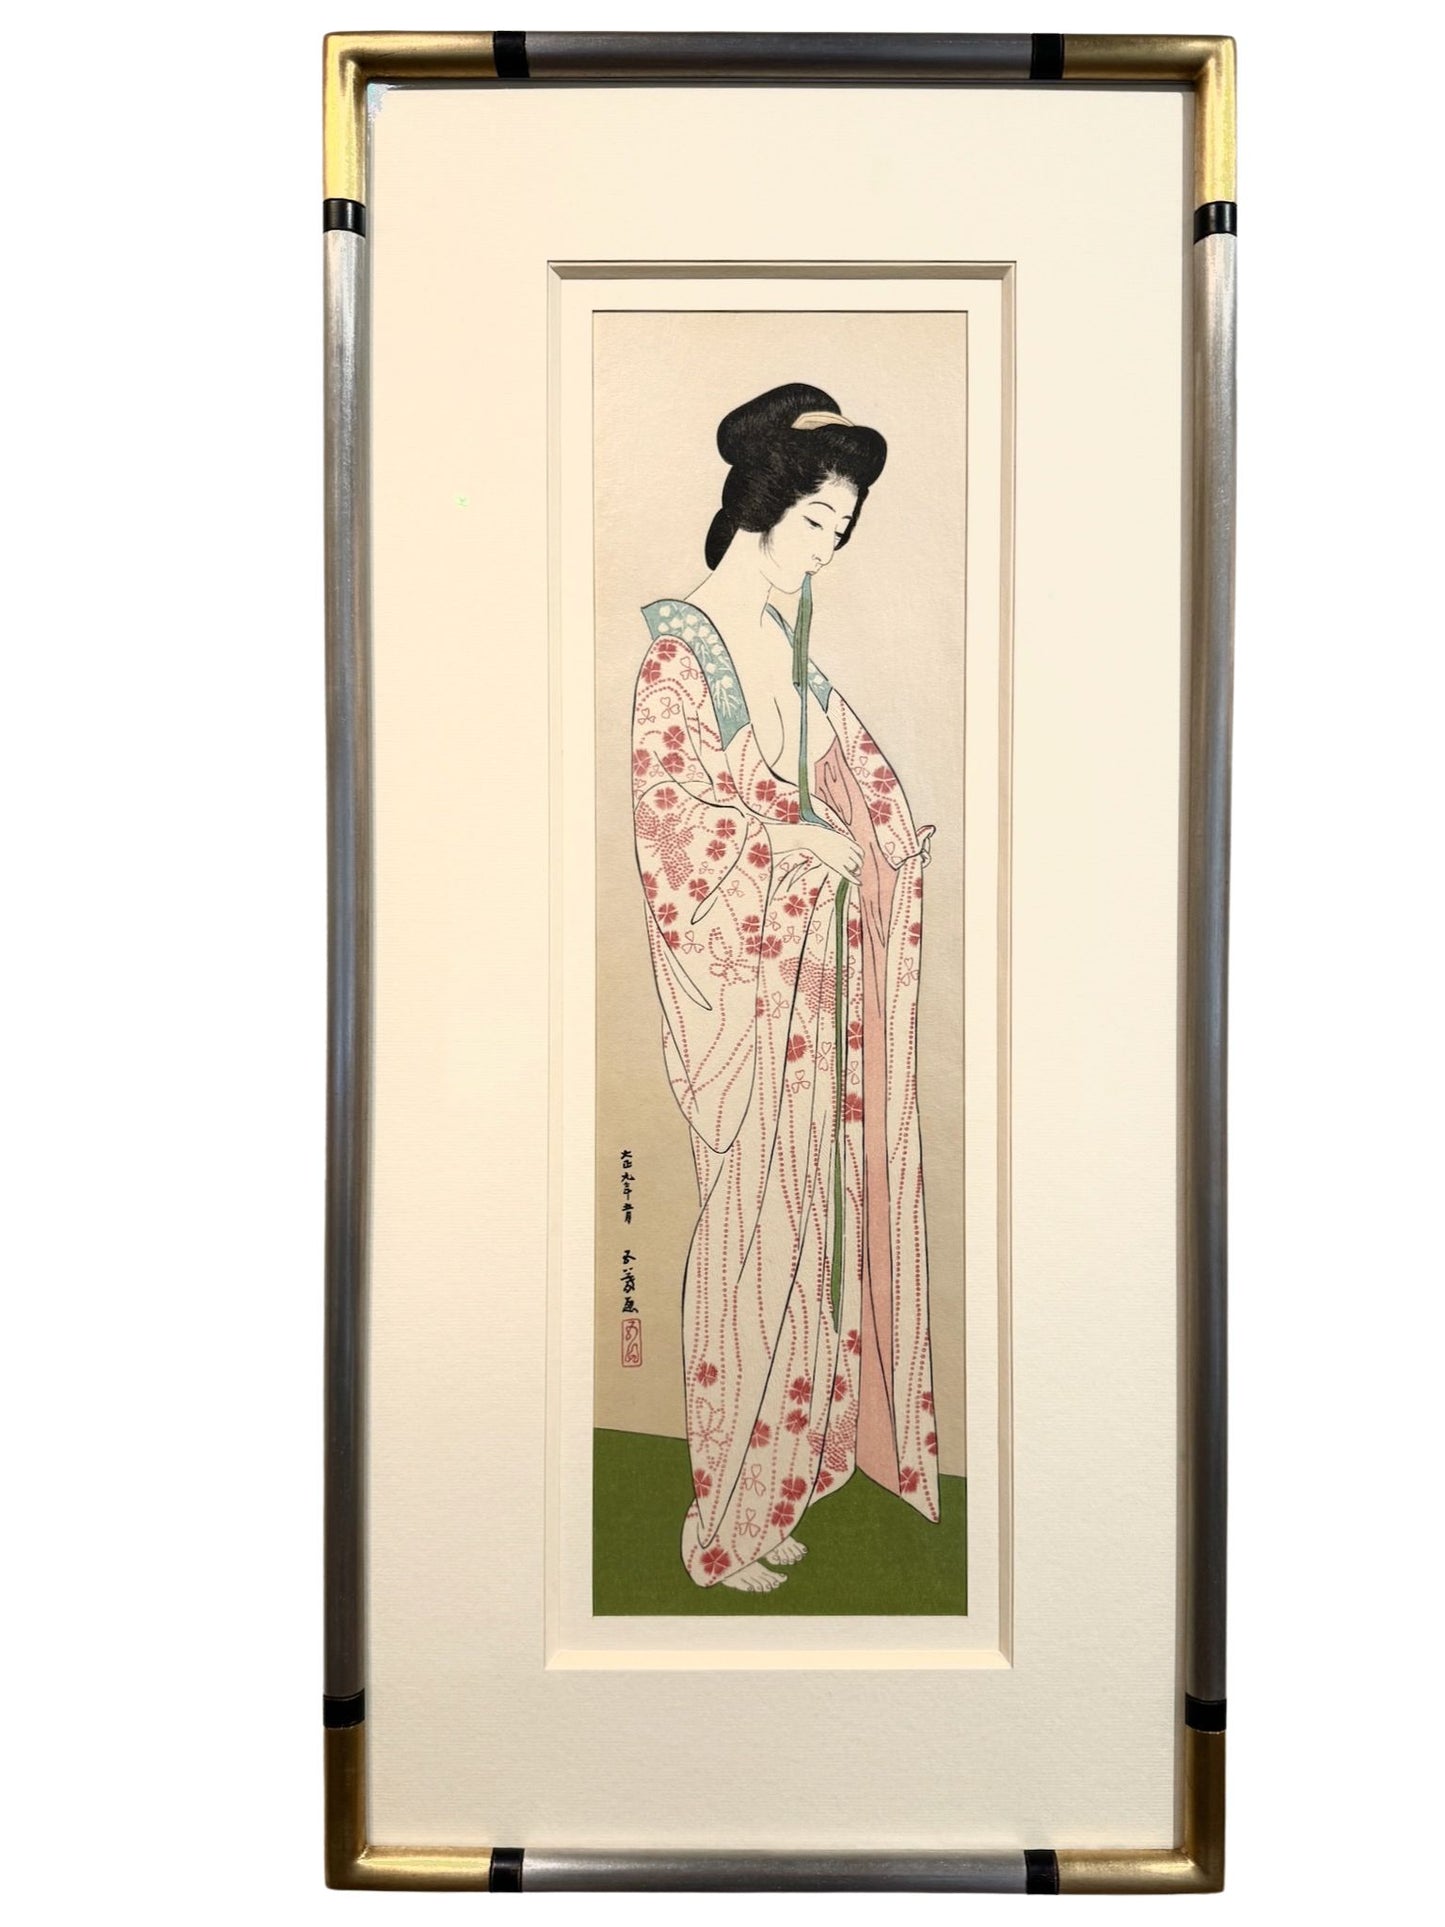 Estampe Japonaise de femme nue enfilant un kimono léger fleuri de printemps, cadre jonc argent avec angle or et bague noire